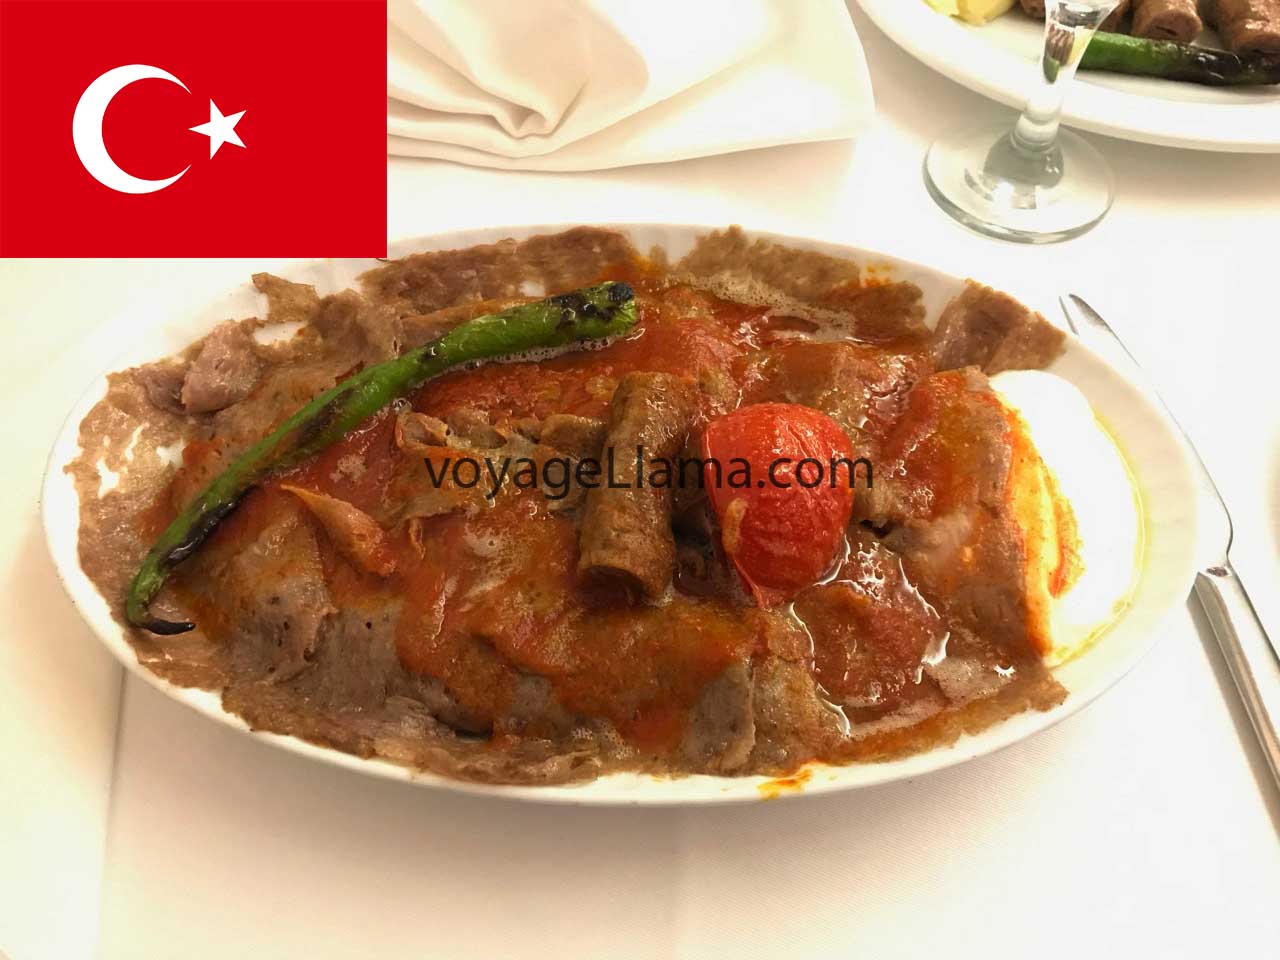 Alimentos na Turquia, as 5 melhores refeições que você deve experimentar.